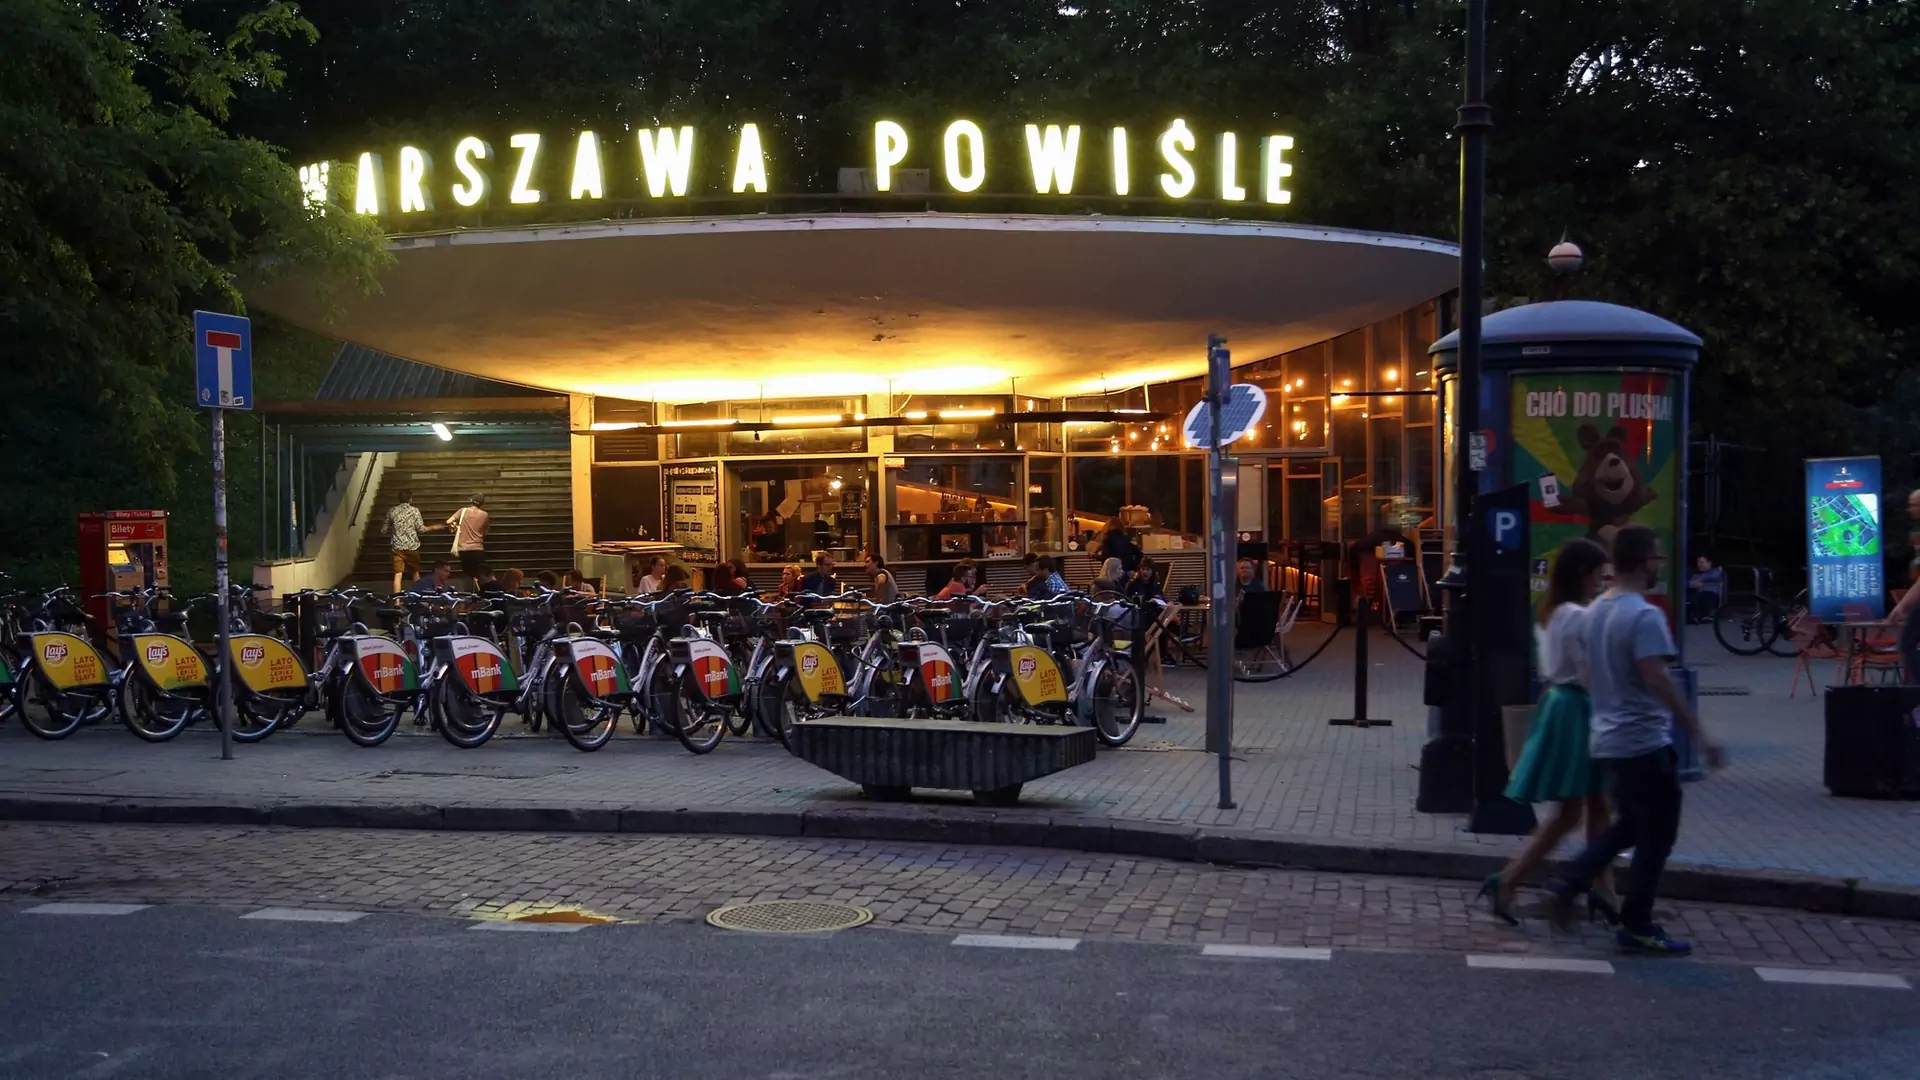 Budynek kultowej klubokawiarni Warszawa Powiśle wpisany na listę zabytków